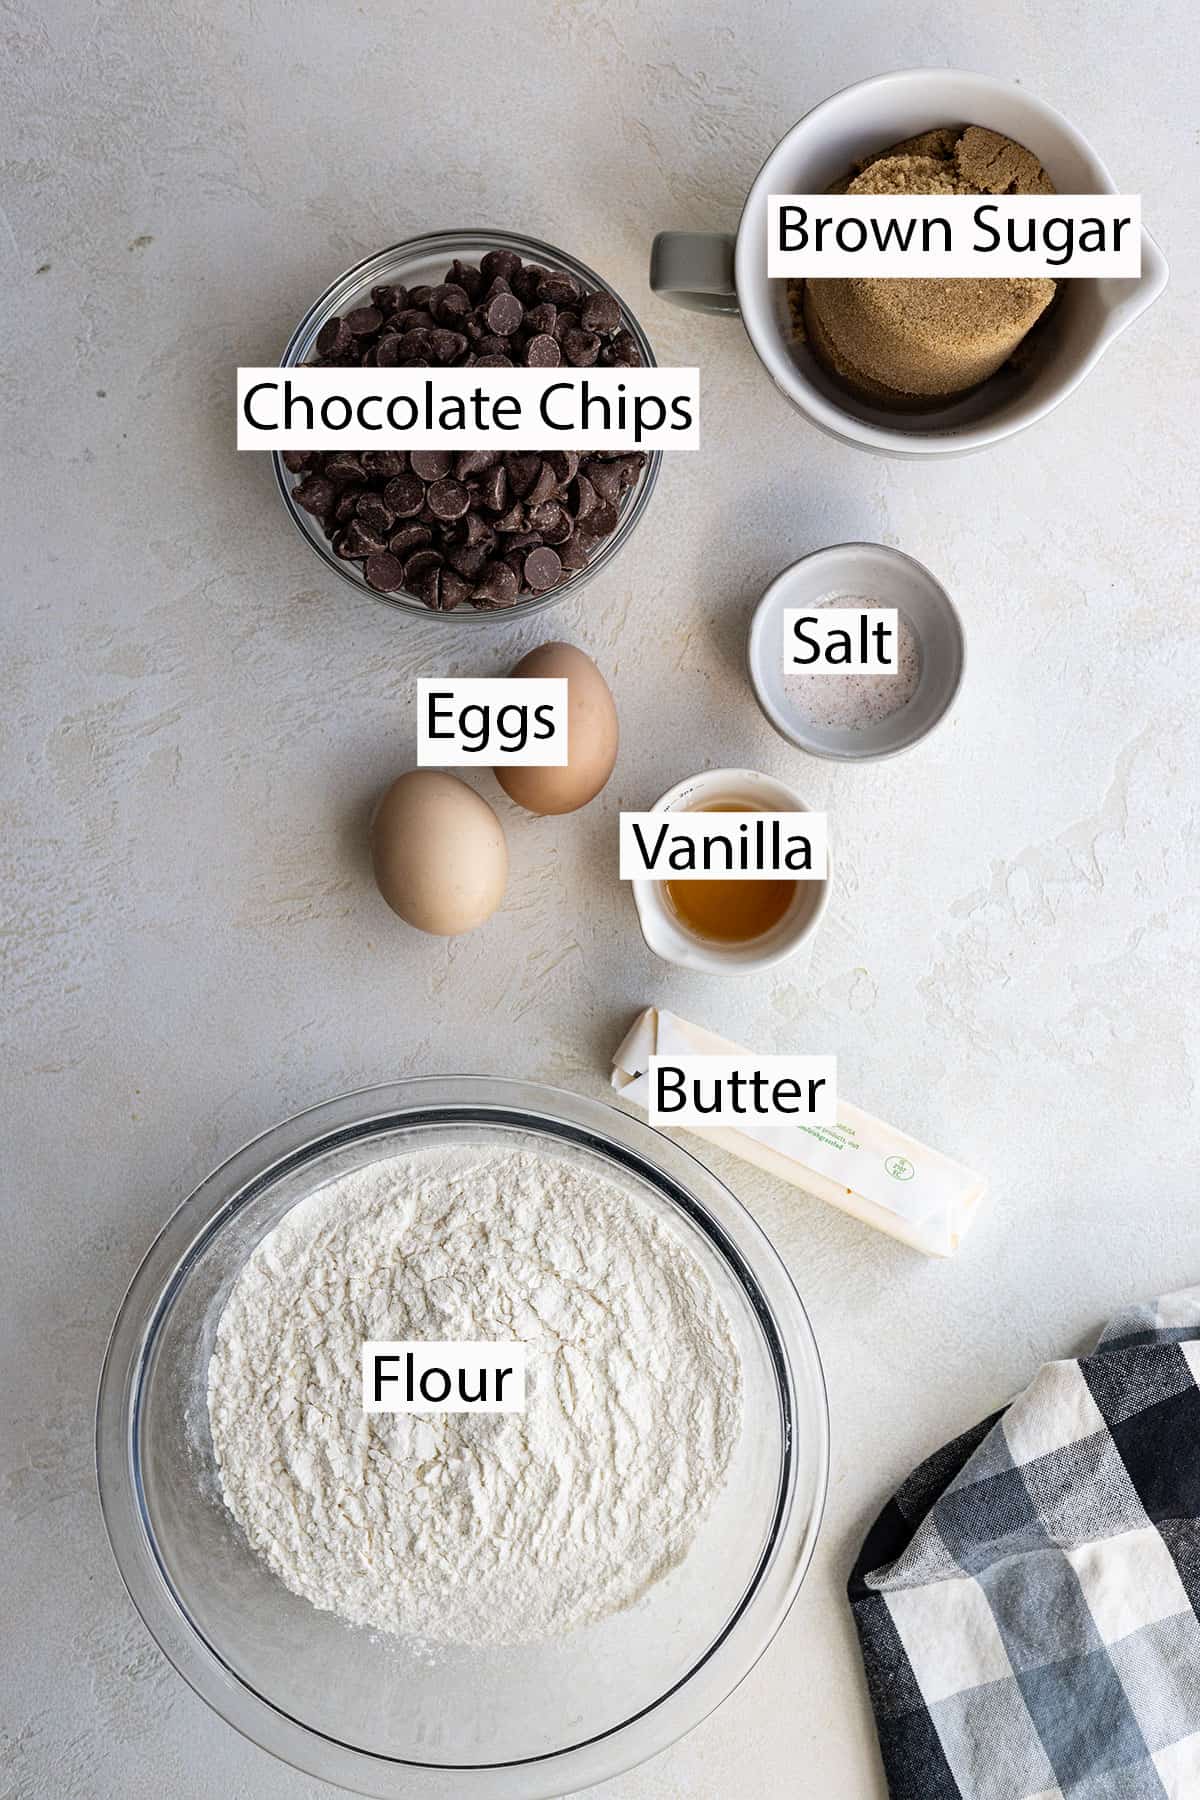 Ingredients: Brown sugar, chocolate chips, eggs, vanilla, salt, butter, flour.